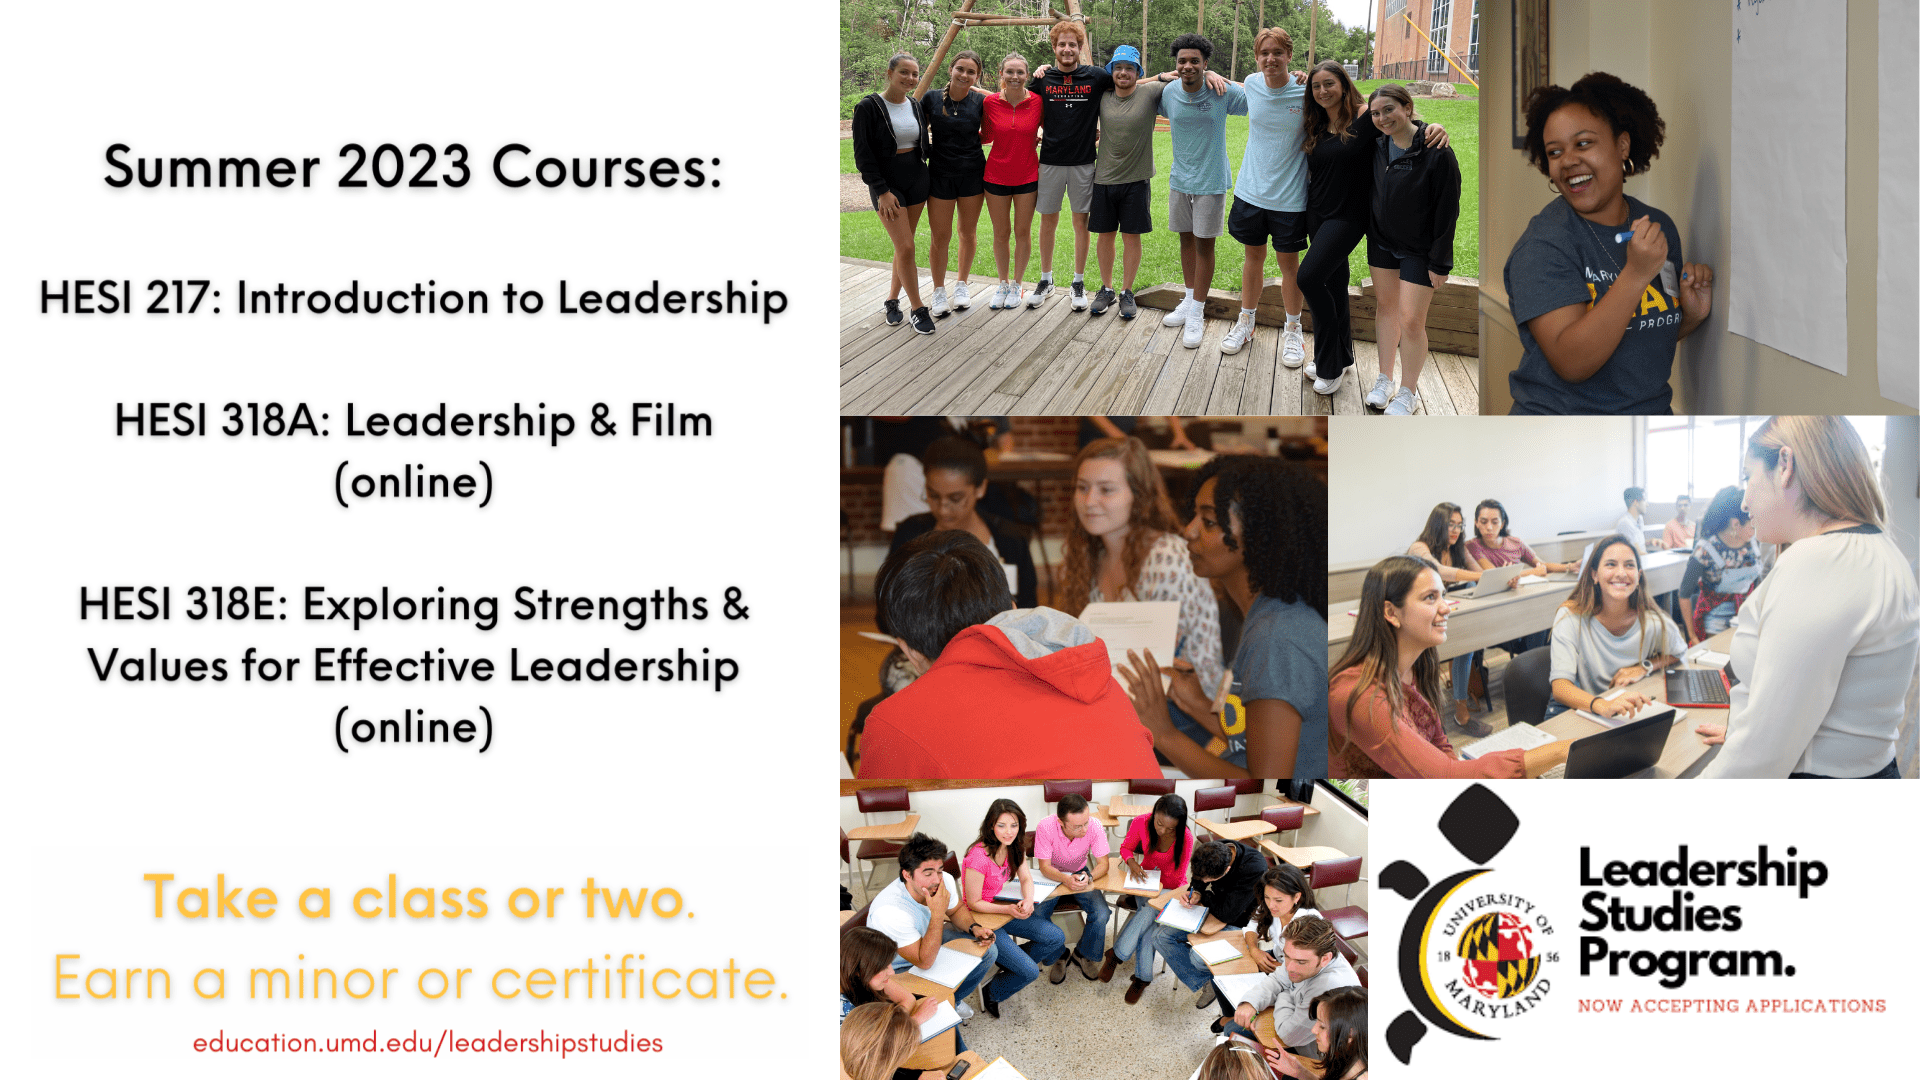 Summer leadership courses available at education.umd.edu/leadershipstudies